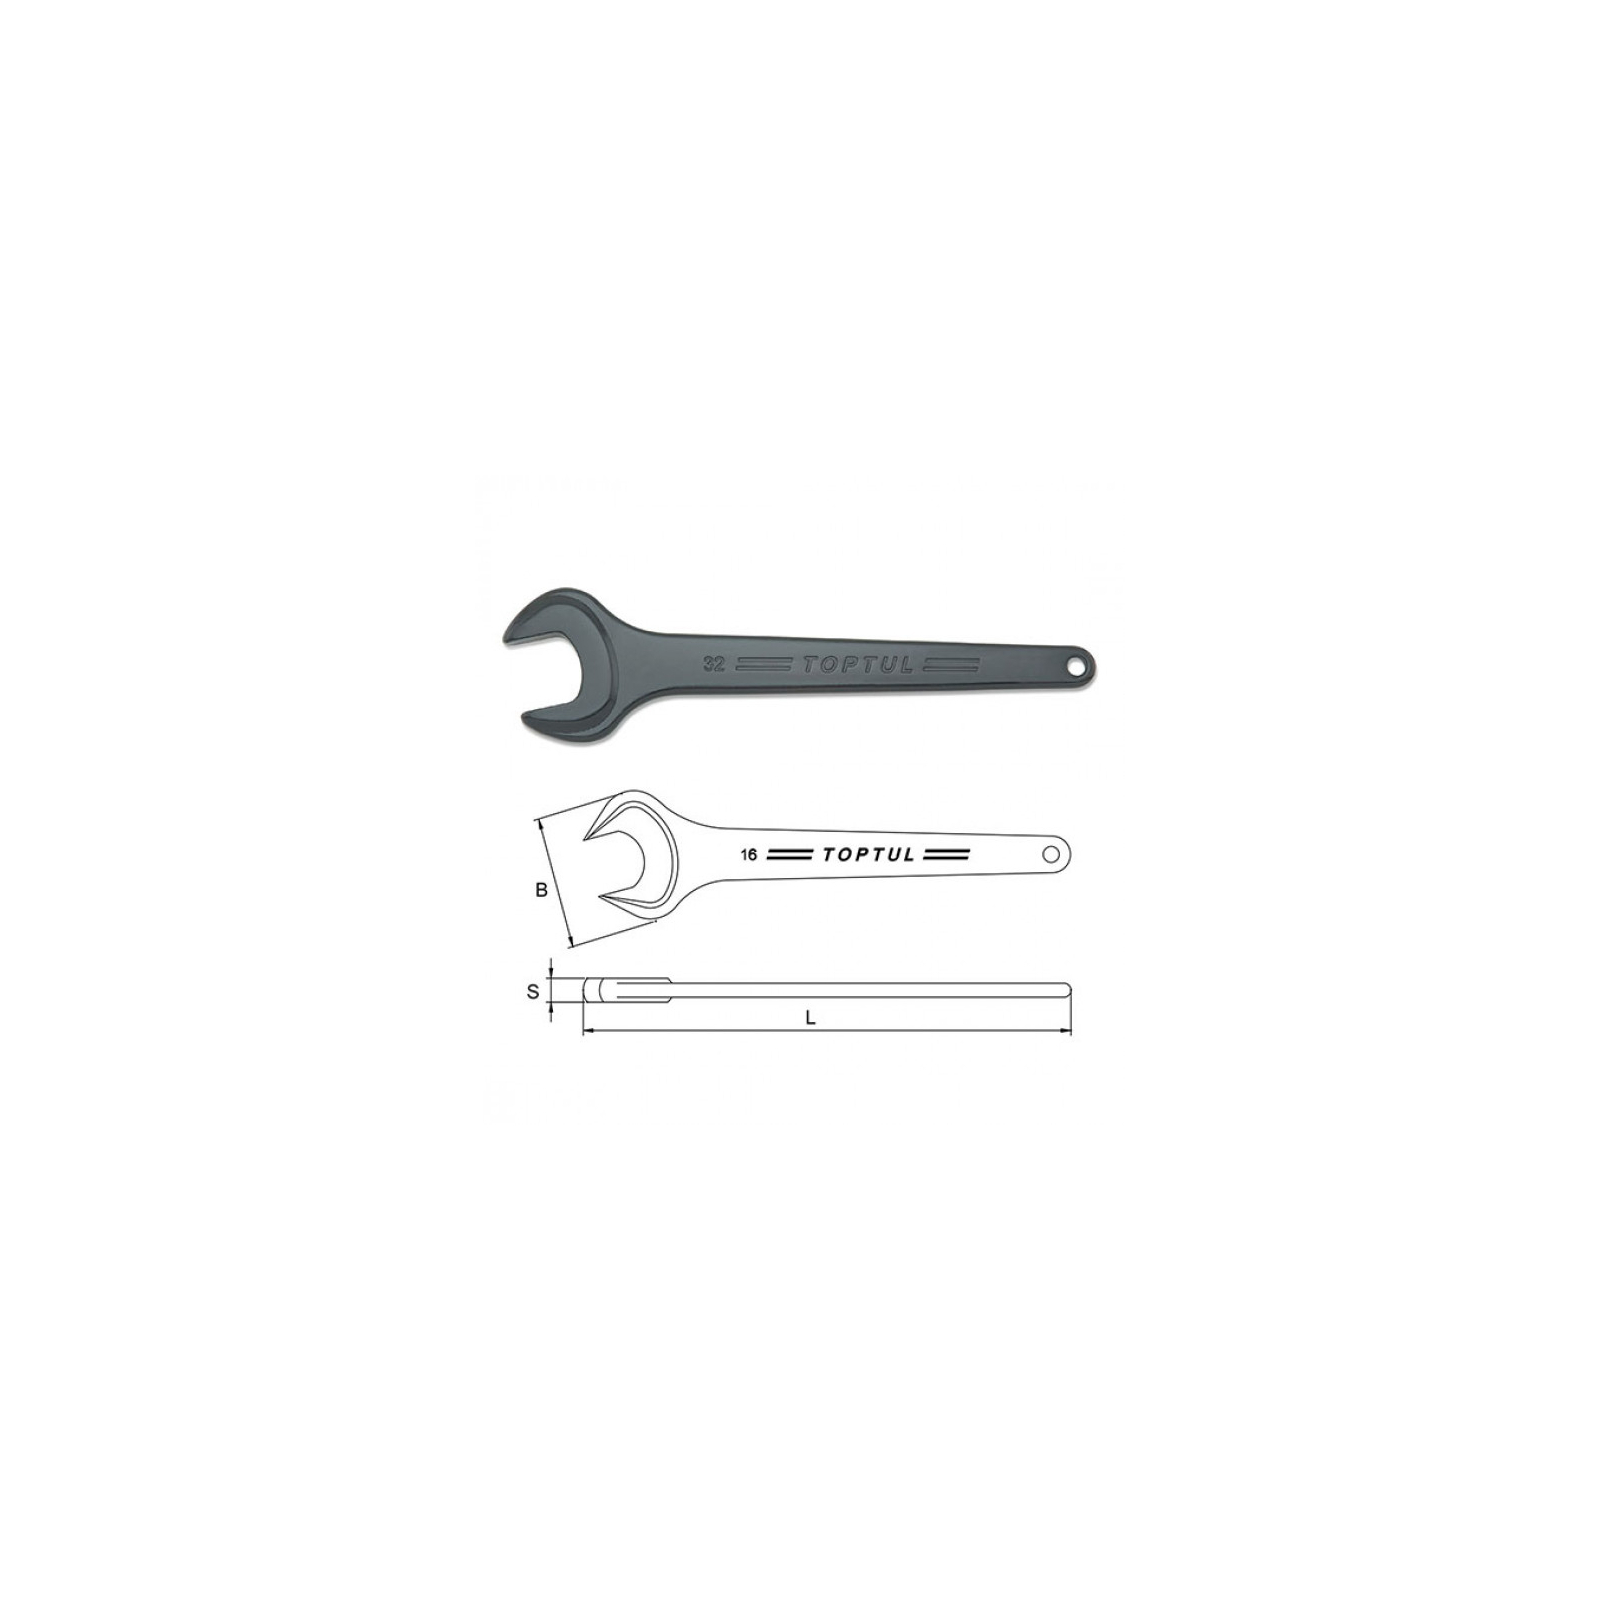 Ключ Toptul рожковый односторонний (усиленный) 24мм (AAAT2424) изображение 2